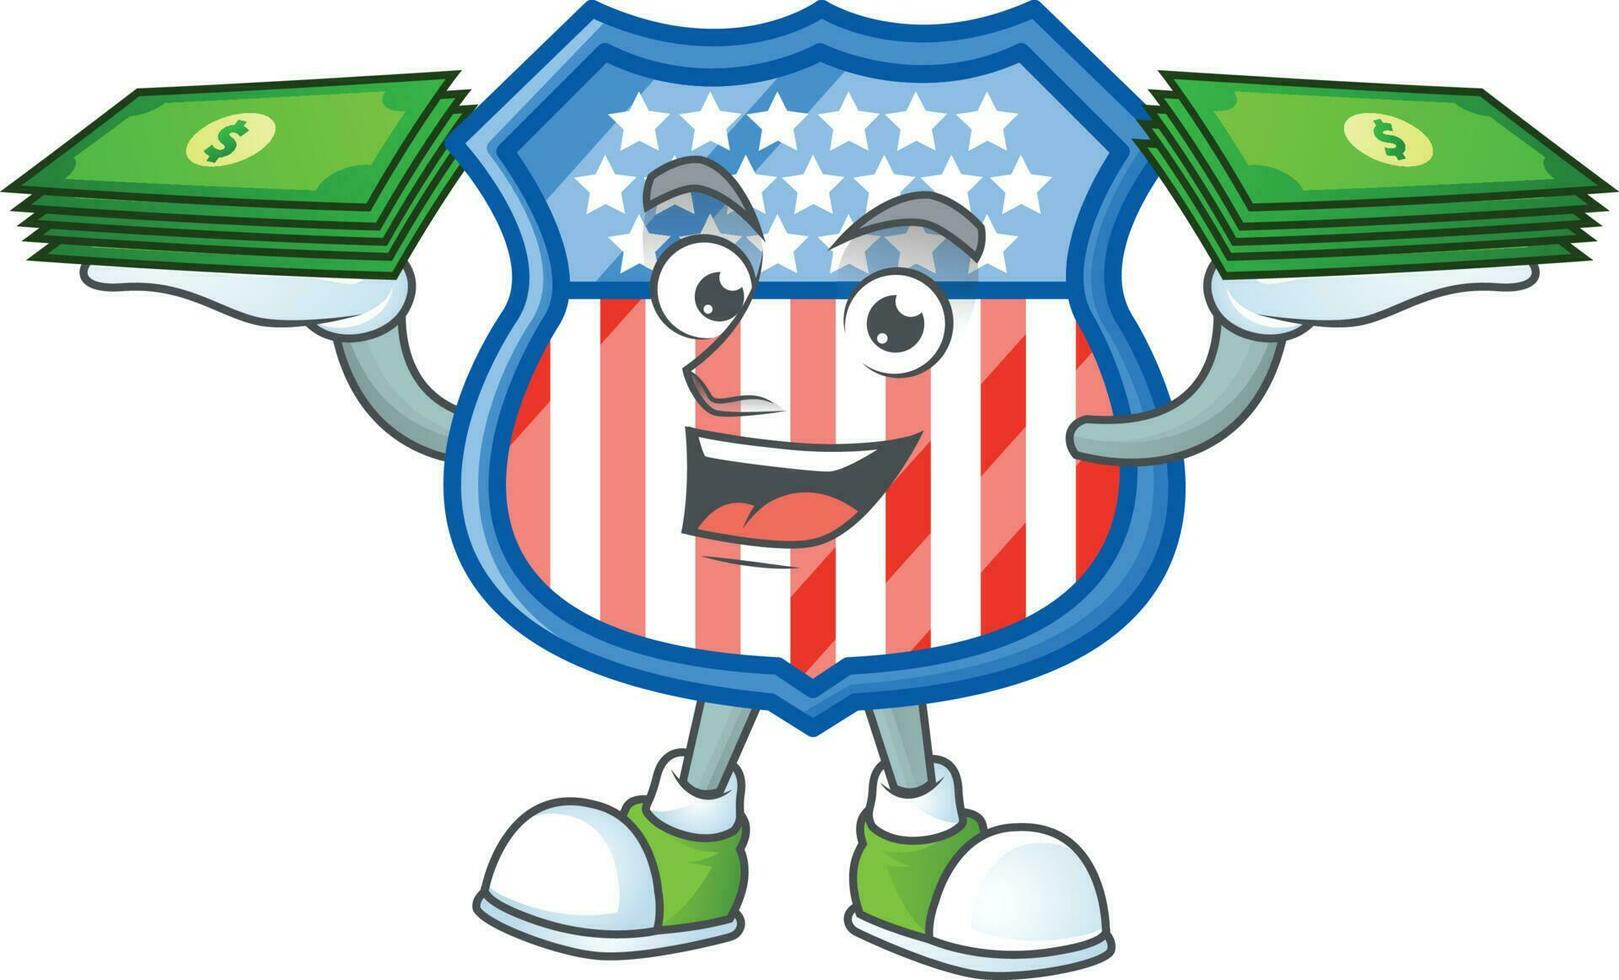 escudo Distintivos EUA ícone Projeto vetor